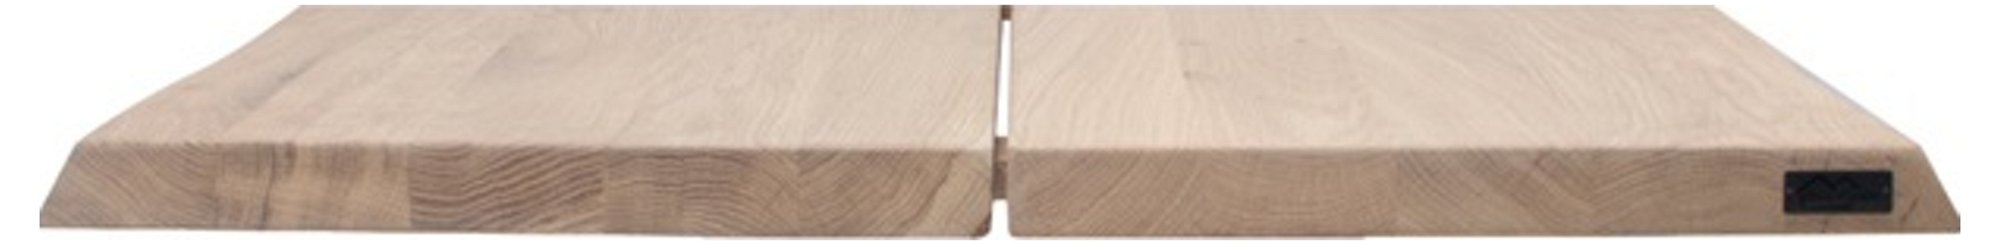 Hugin, Tillægsplade til Hugin plankebord, Egetræ by House of Sander (H: 4 cm. B: 95 cm. L: 50 cm., Hvid)